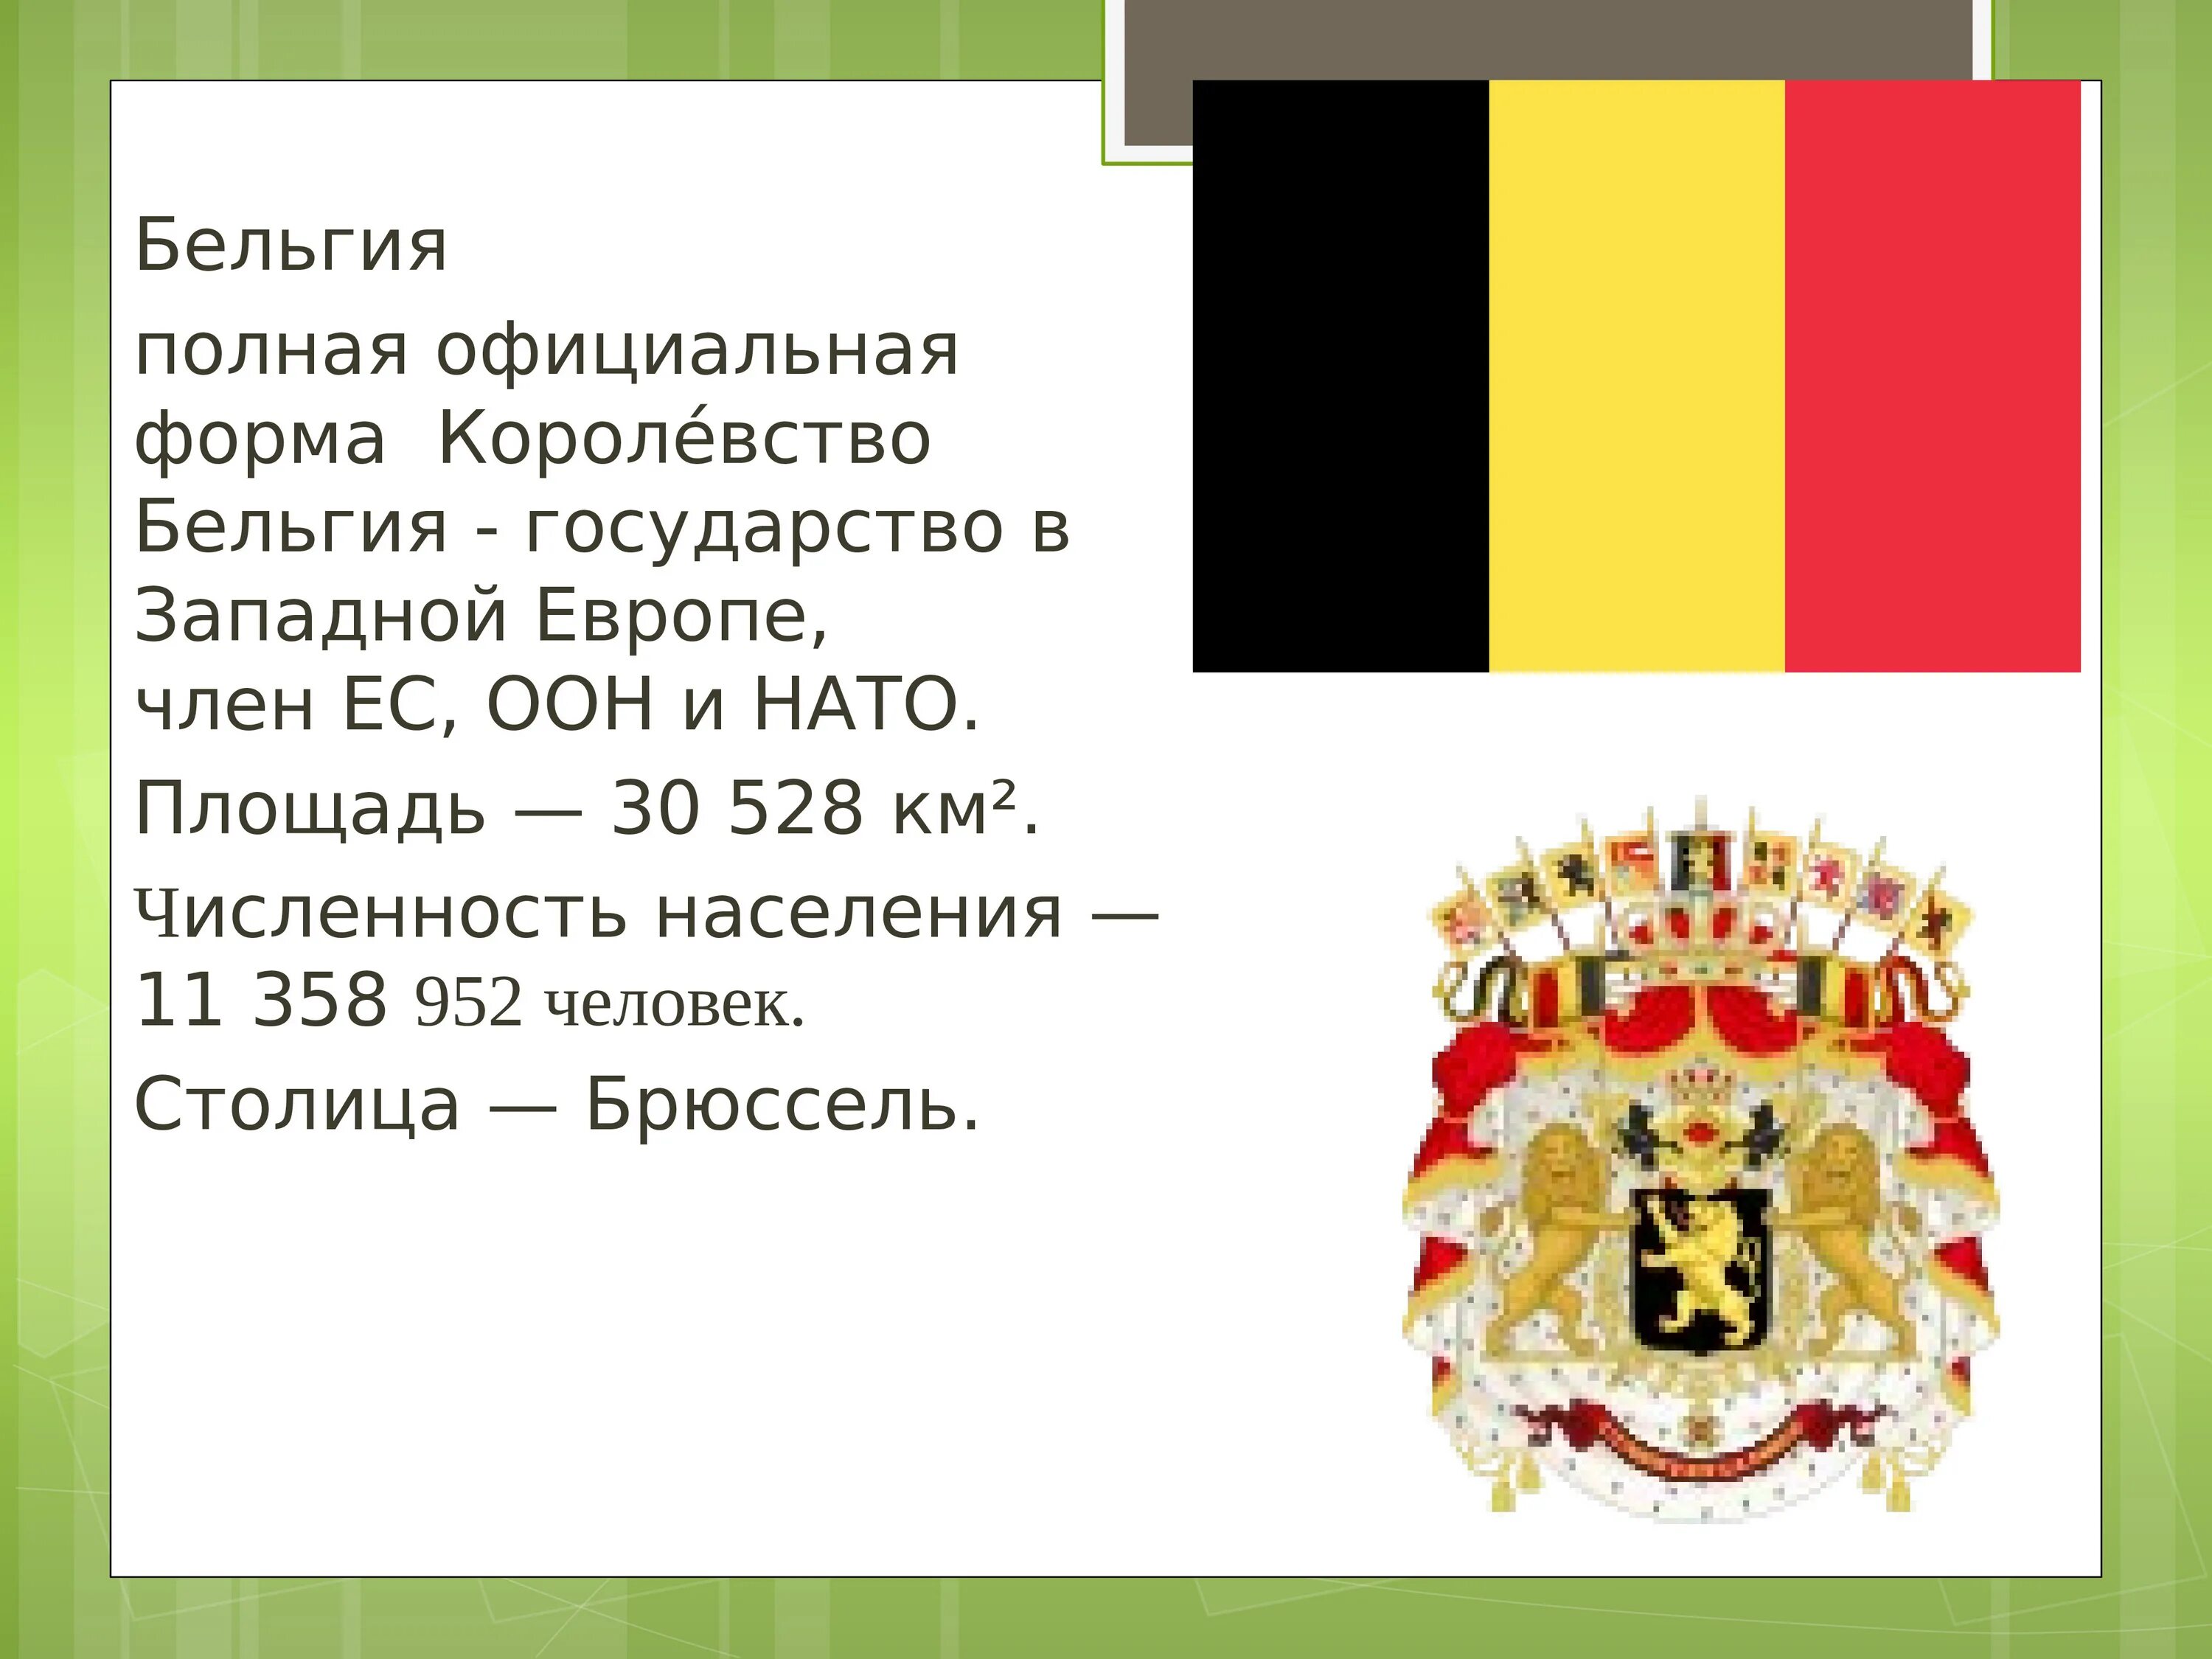 Визитная карточка название страны столица. Визитная карточка Бельгии. Государственные символы Бельгии. Бельгия форма правления.